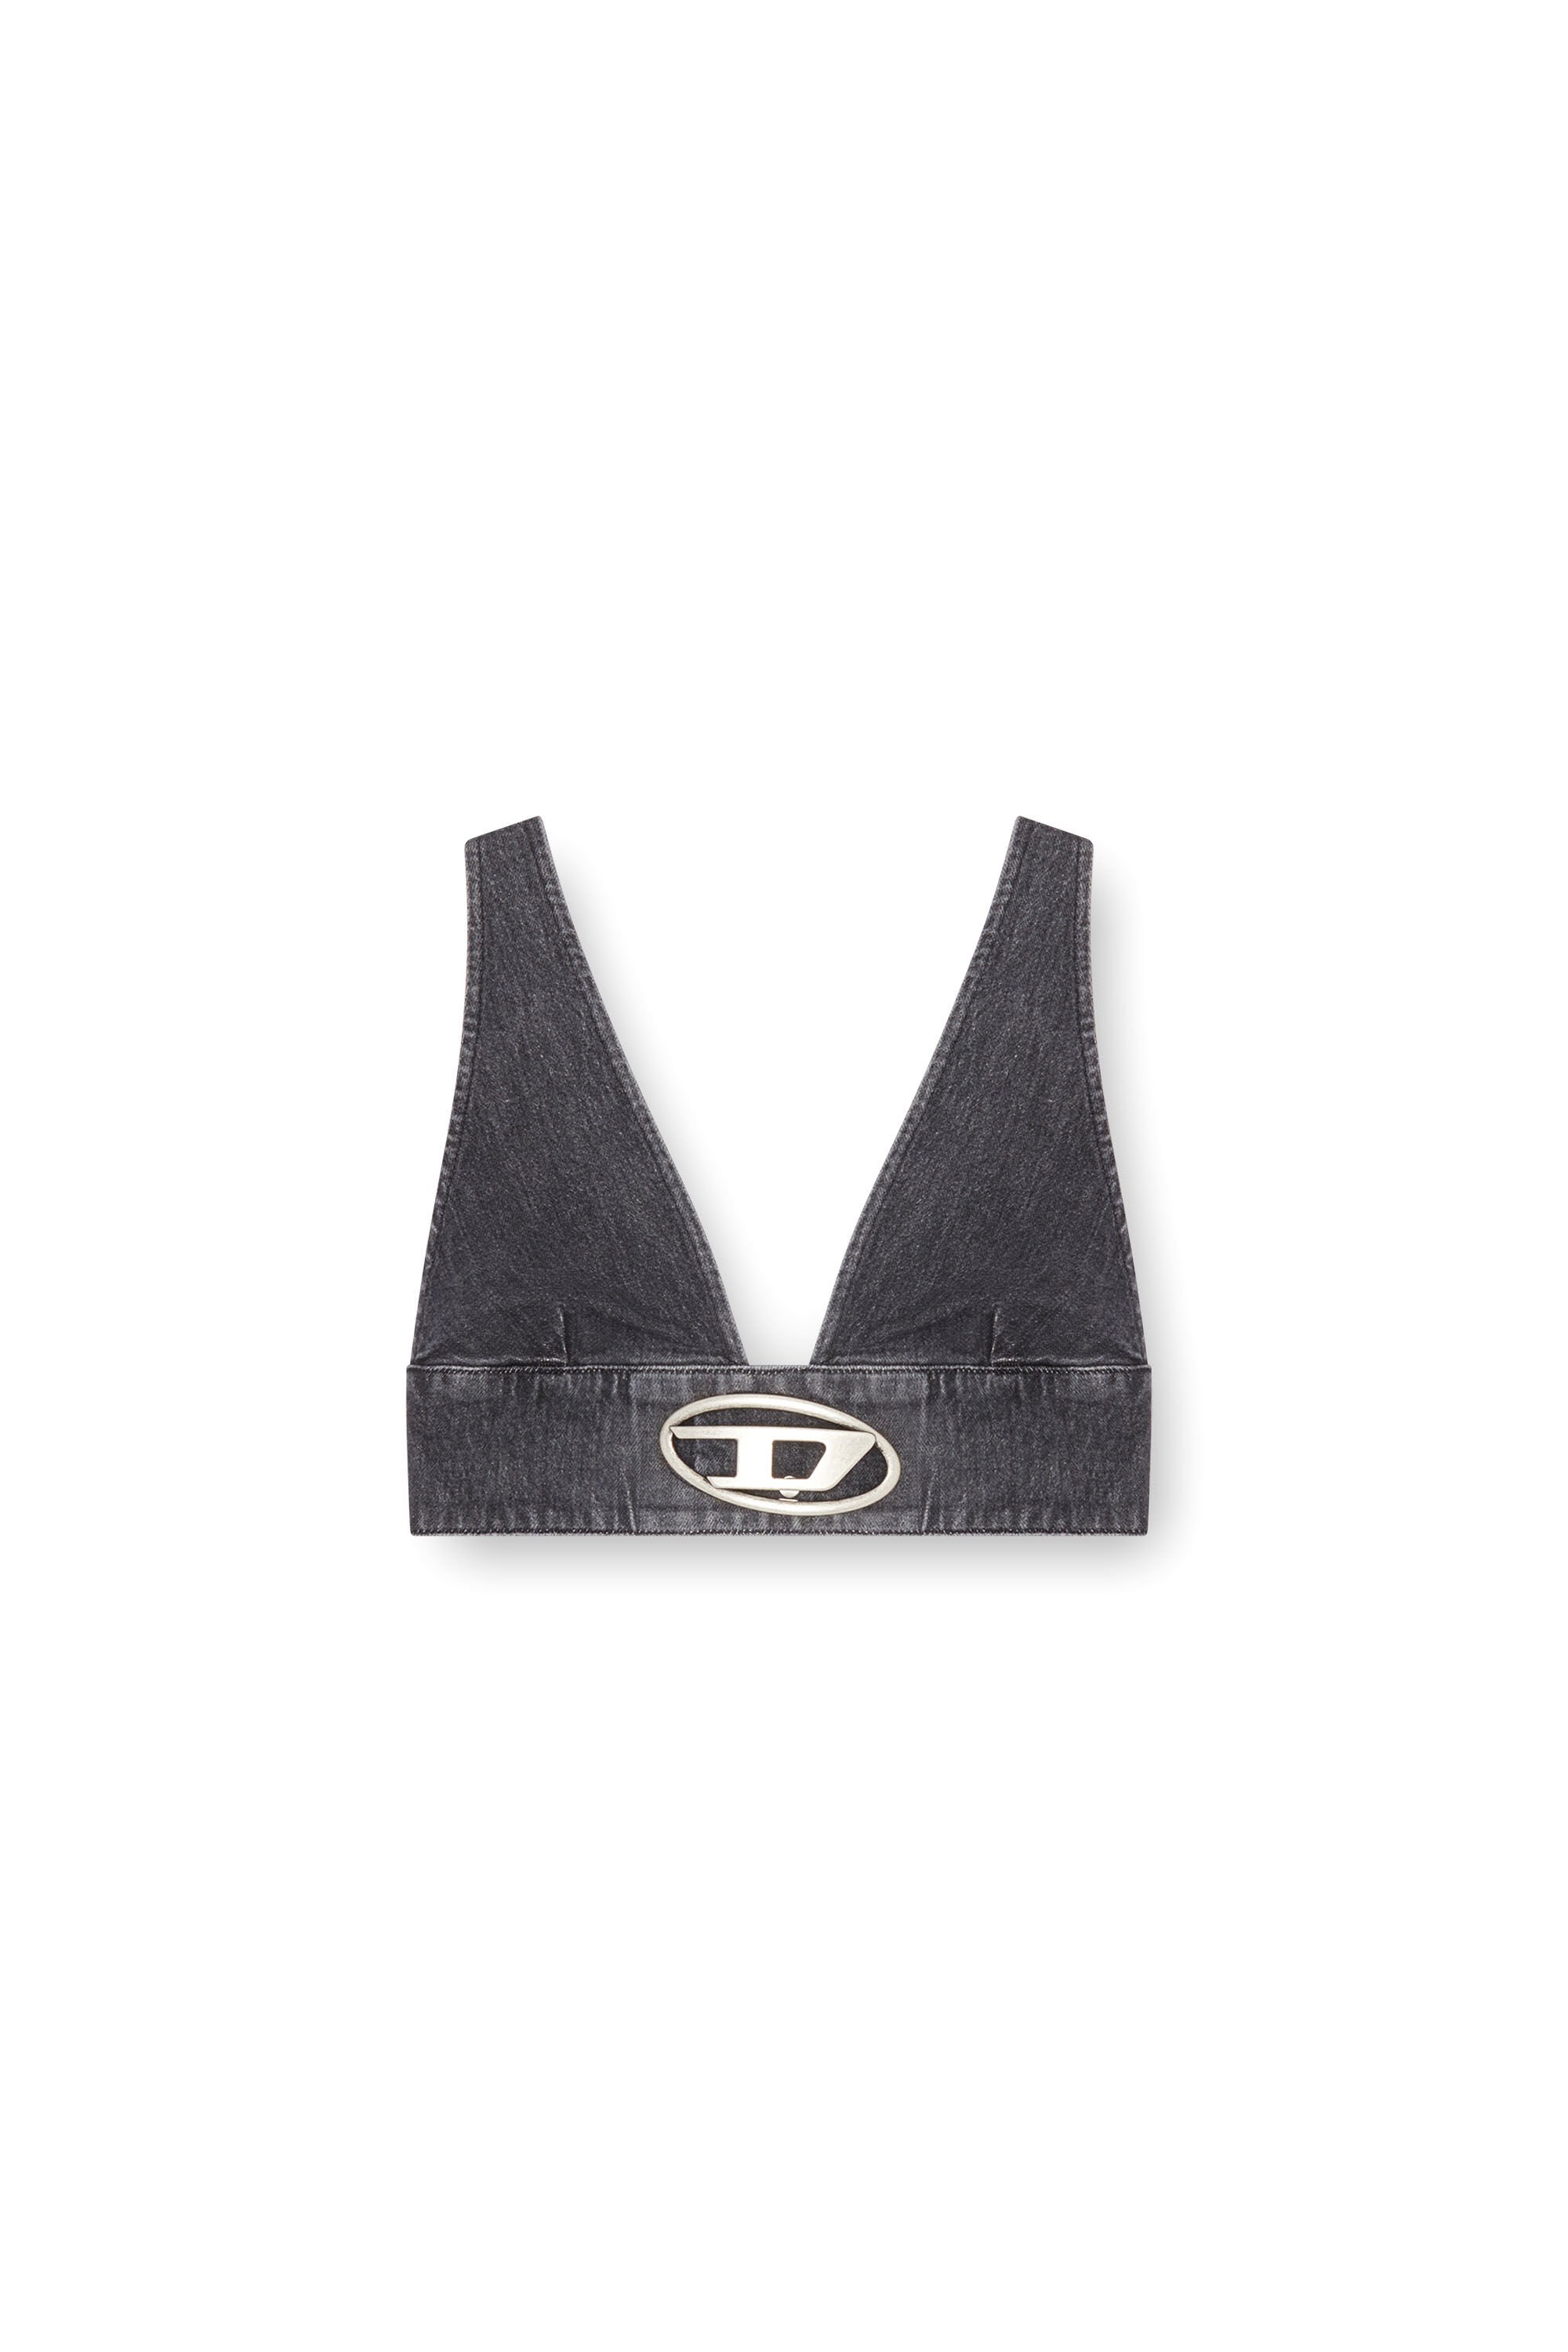 Diesel - DE-ELLY-S, Damen BH-Top aus Denim mit Oval D-Plakette in Schwarz - Image 2